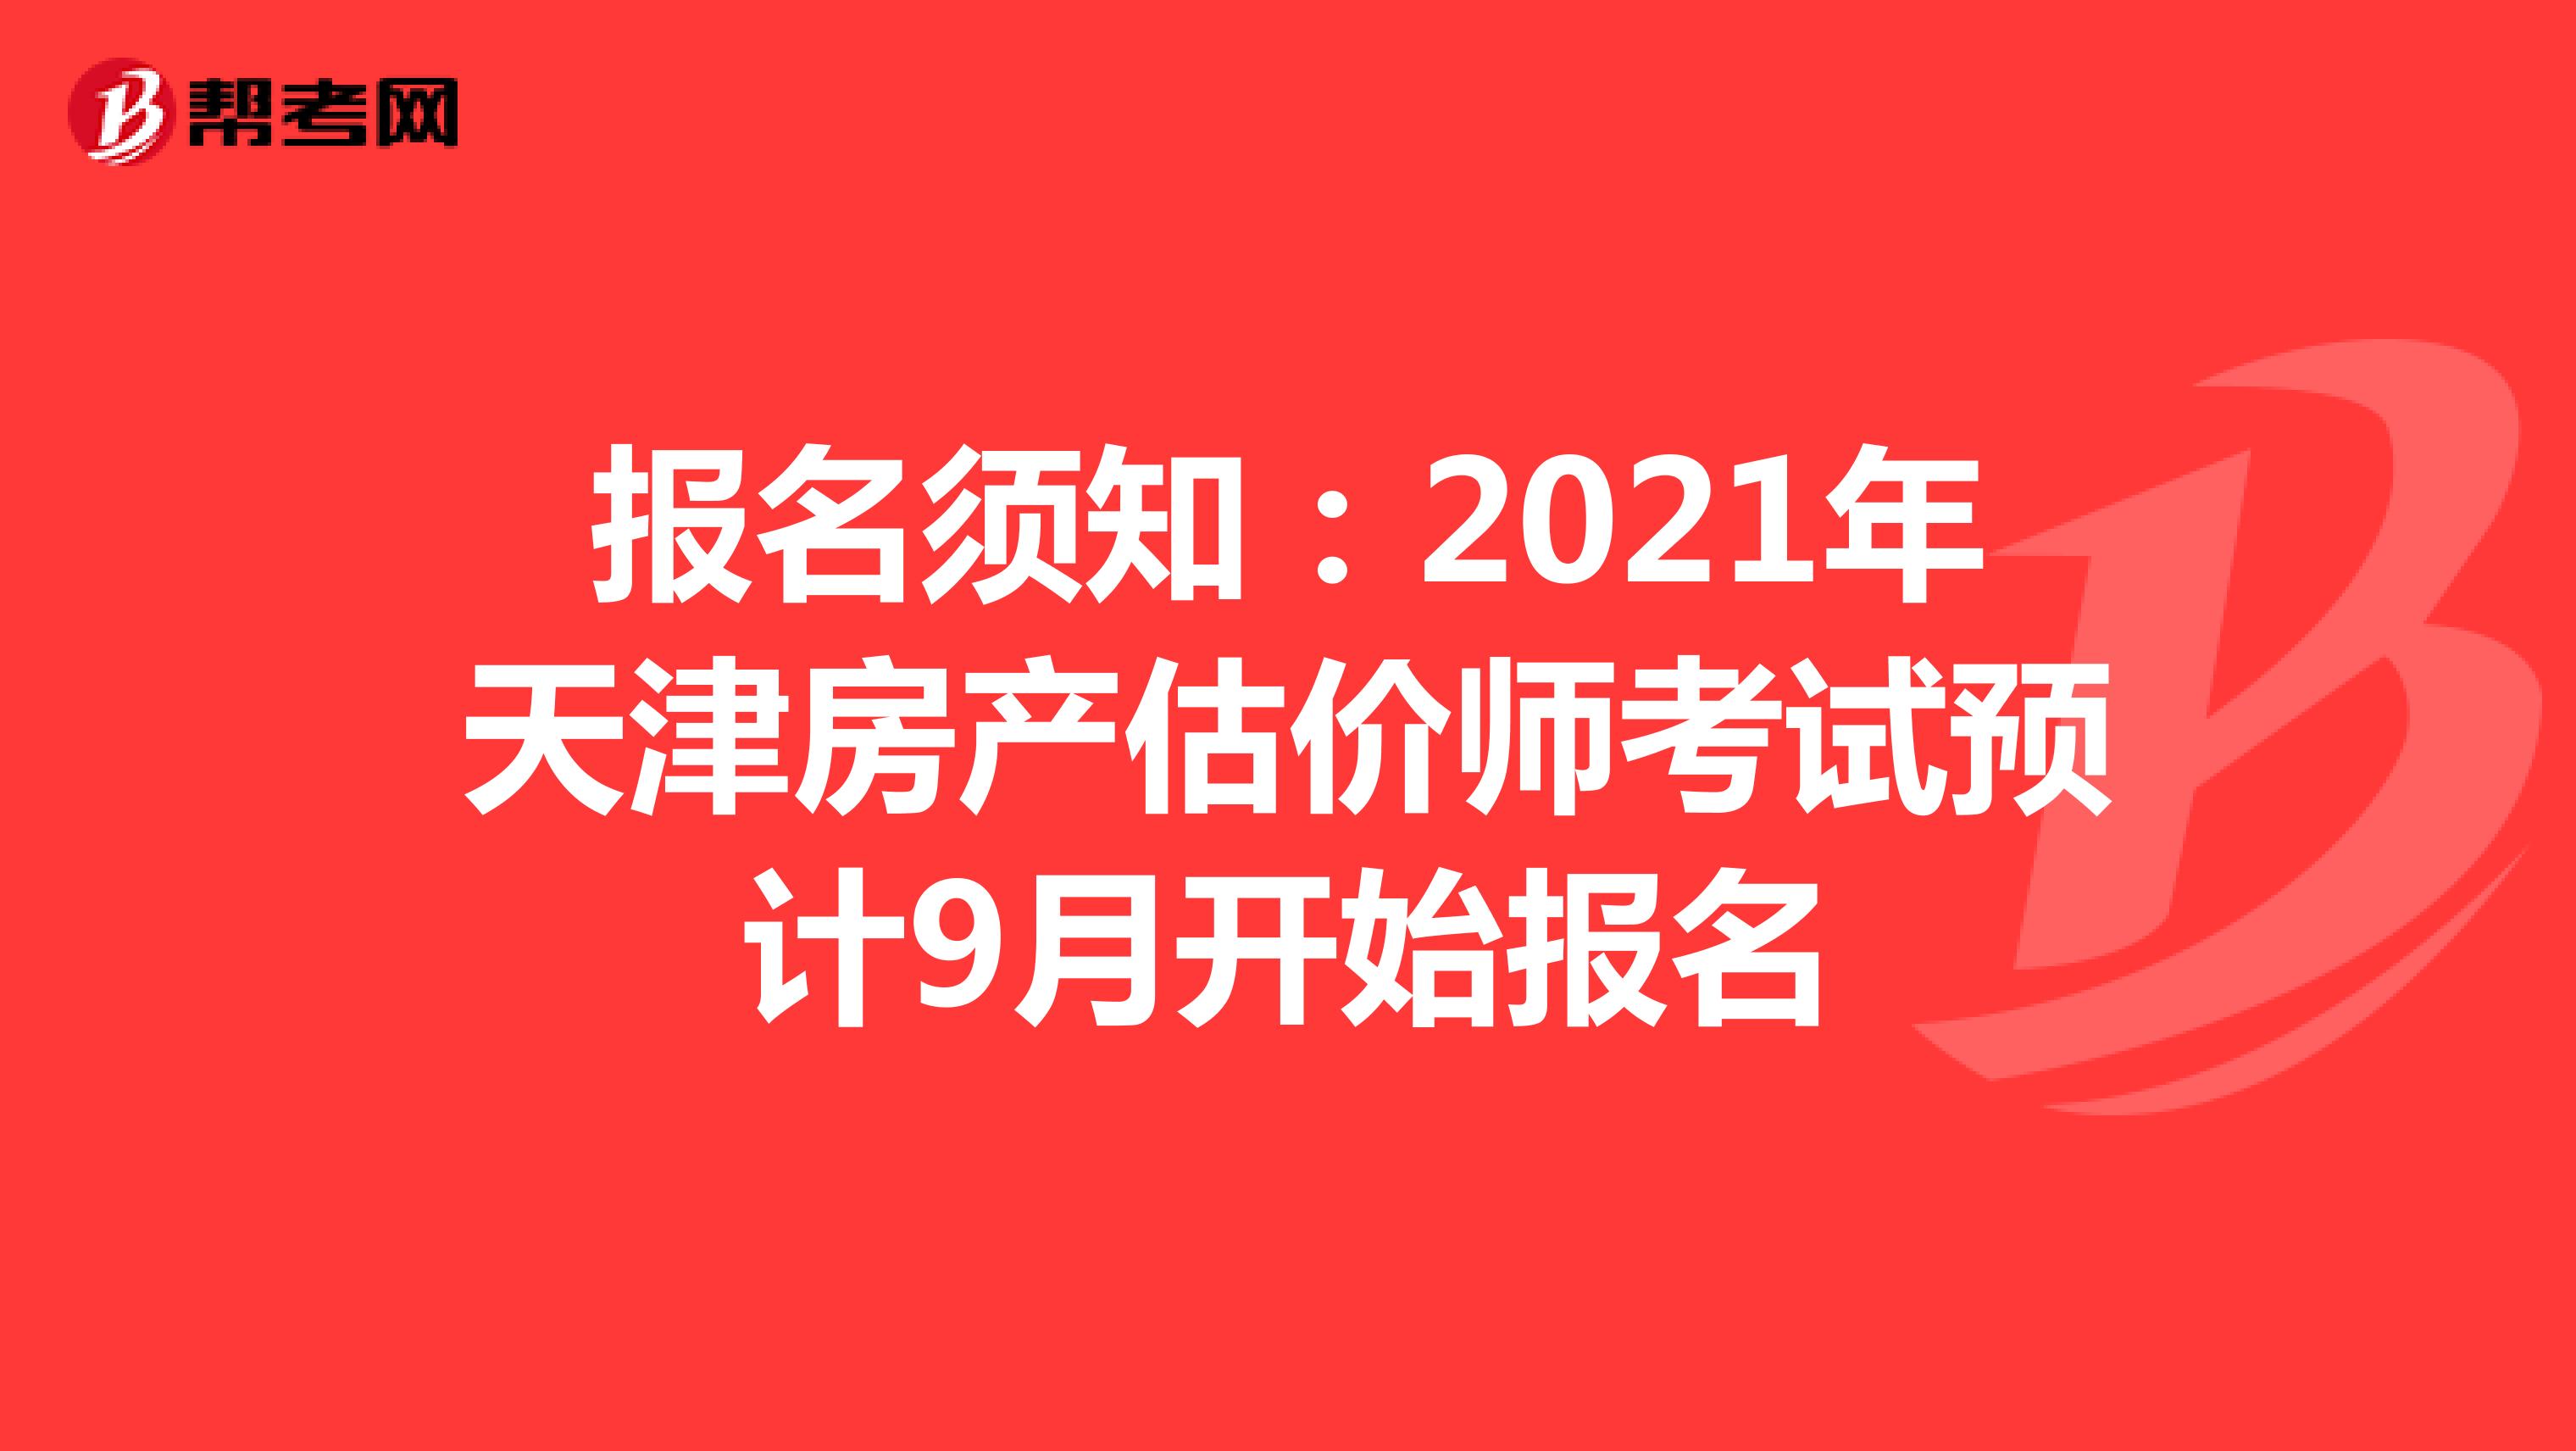 报名须知：2021年天津房产估价师考试预计9月开始报名